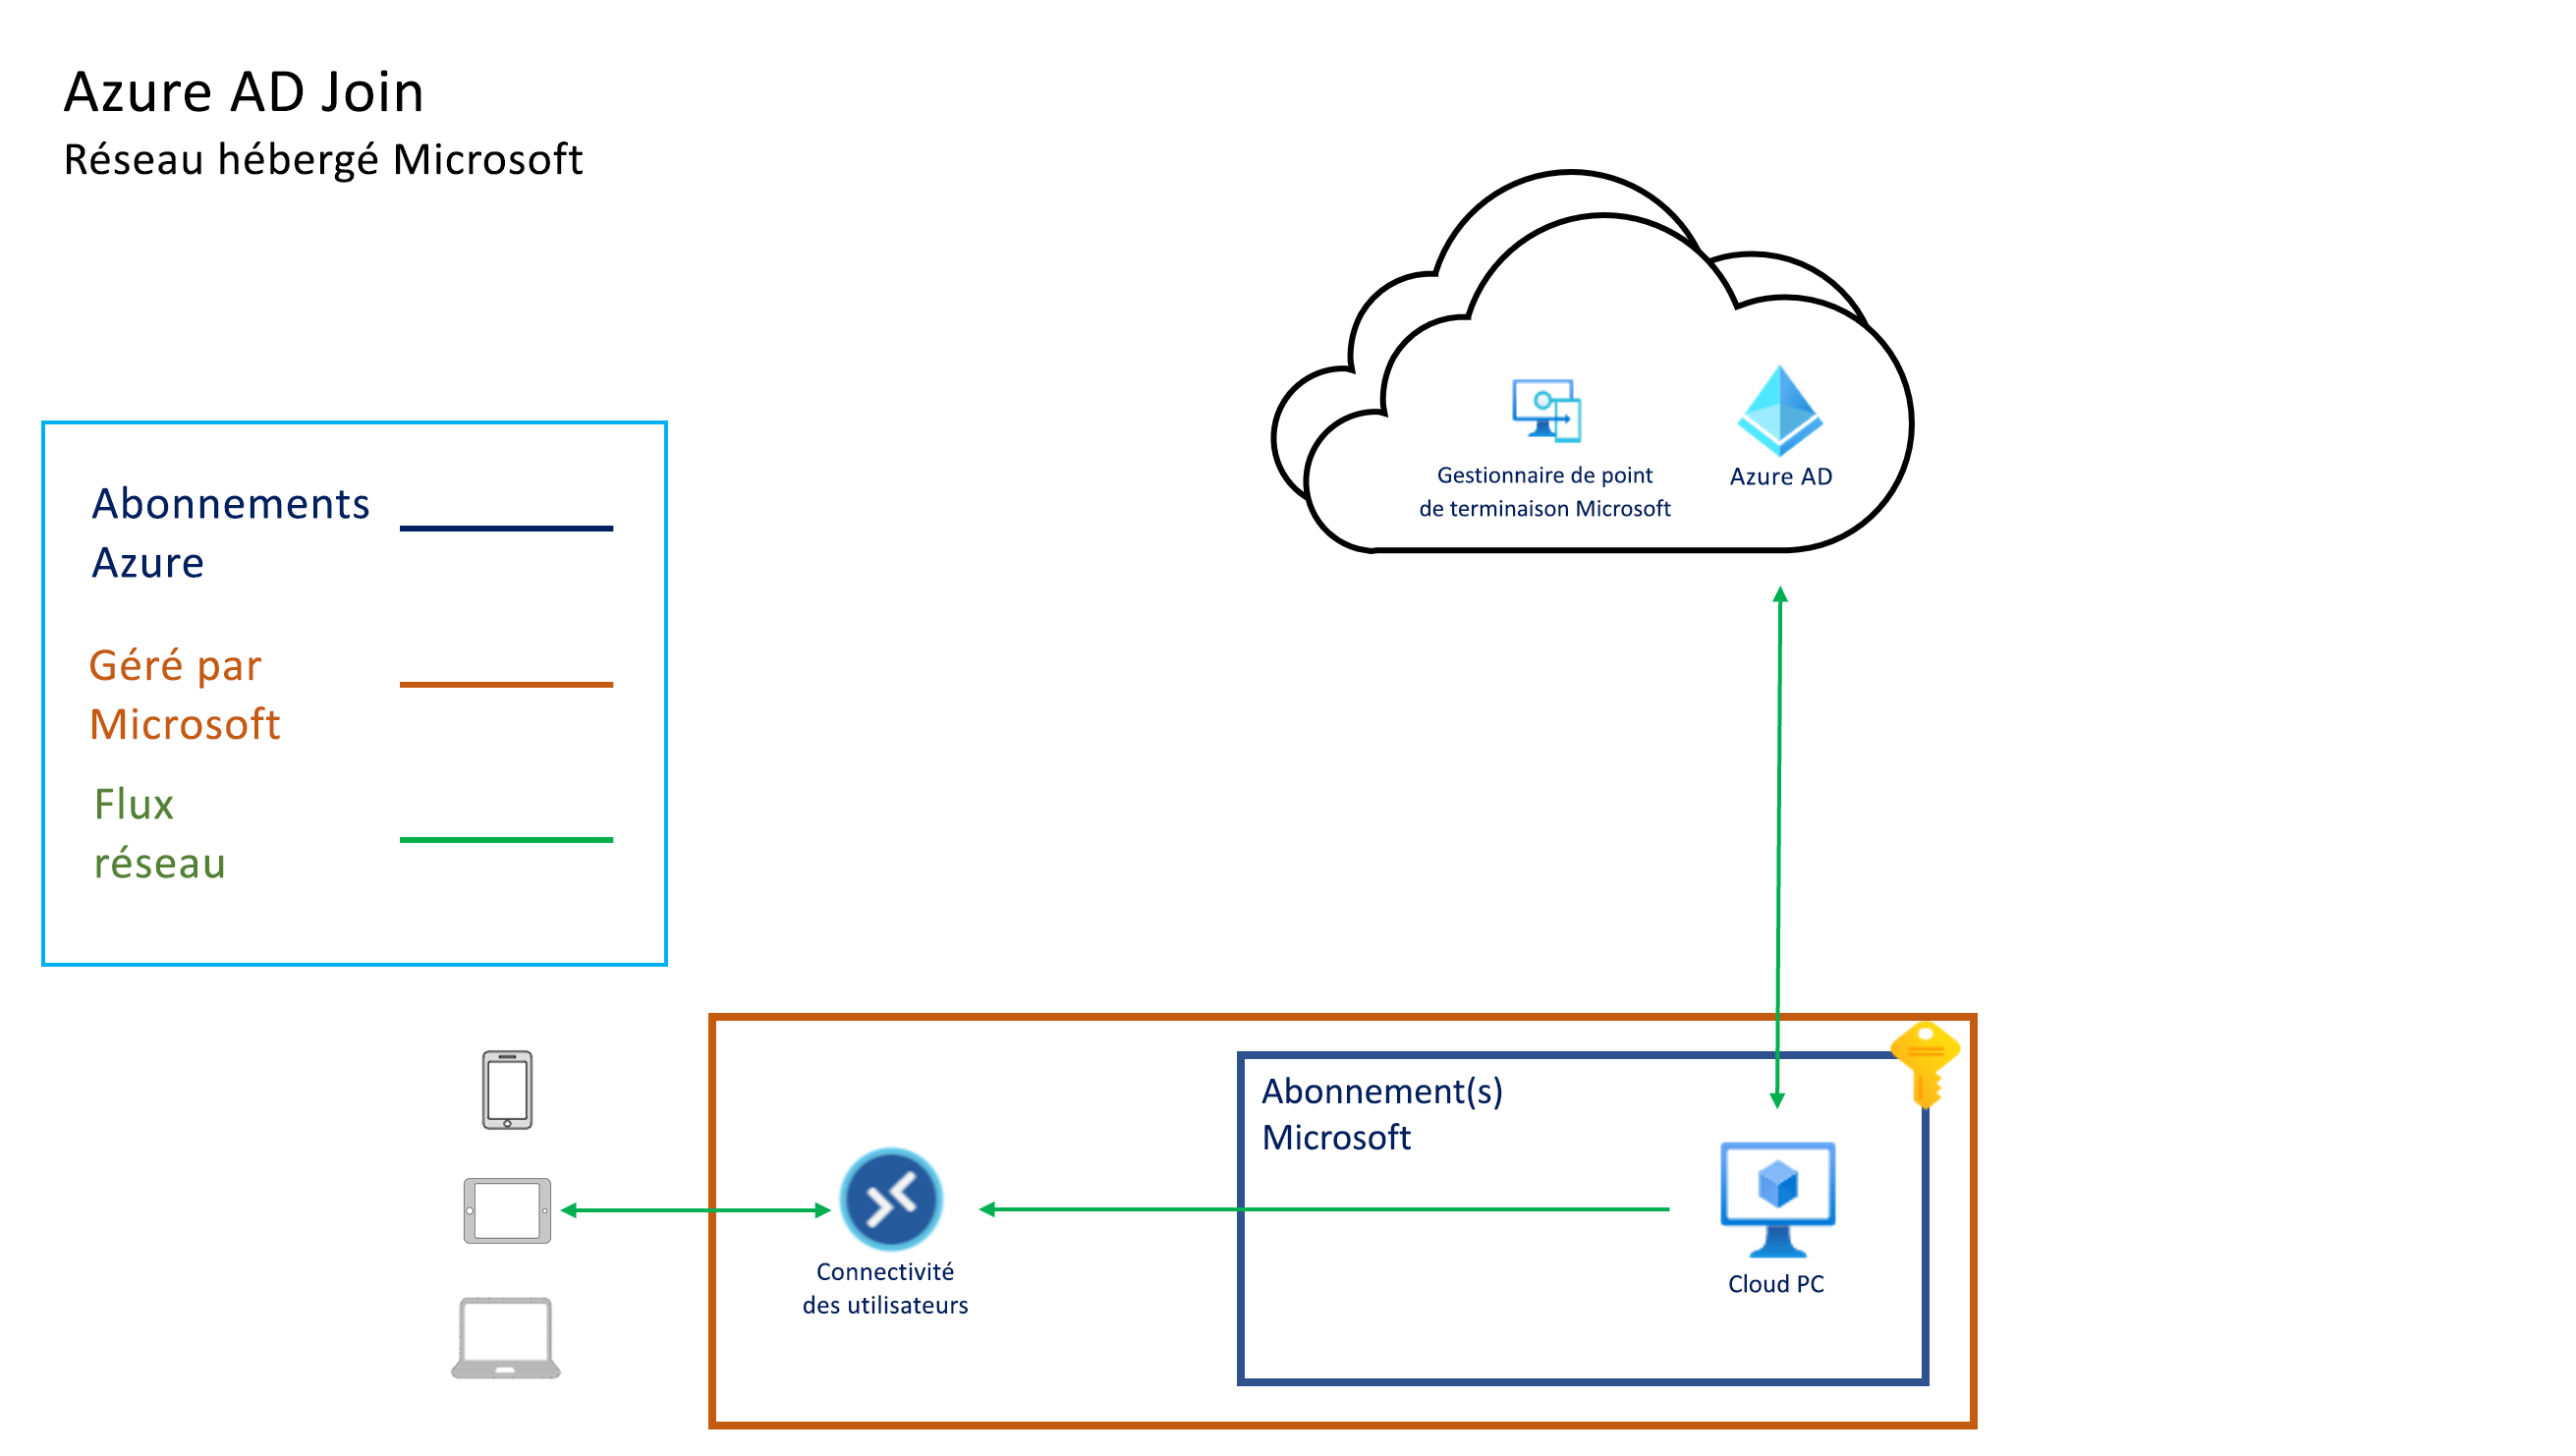 L’architecture de Jonction Azure AD avec le réseau hébergé par Microsoft